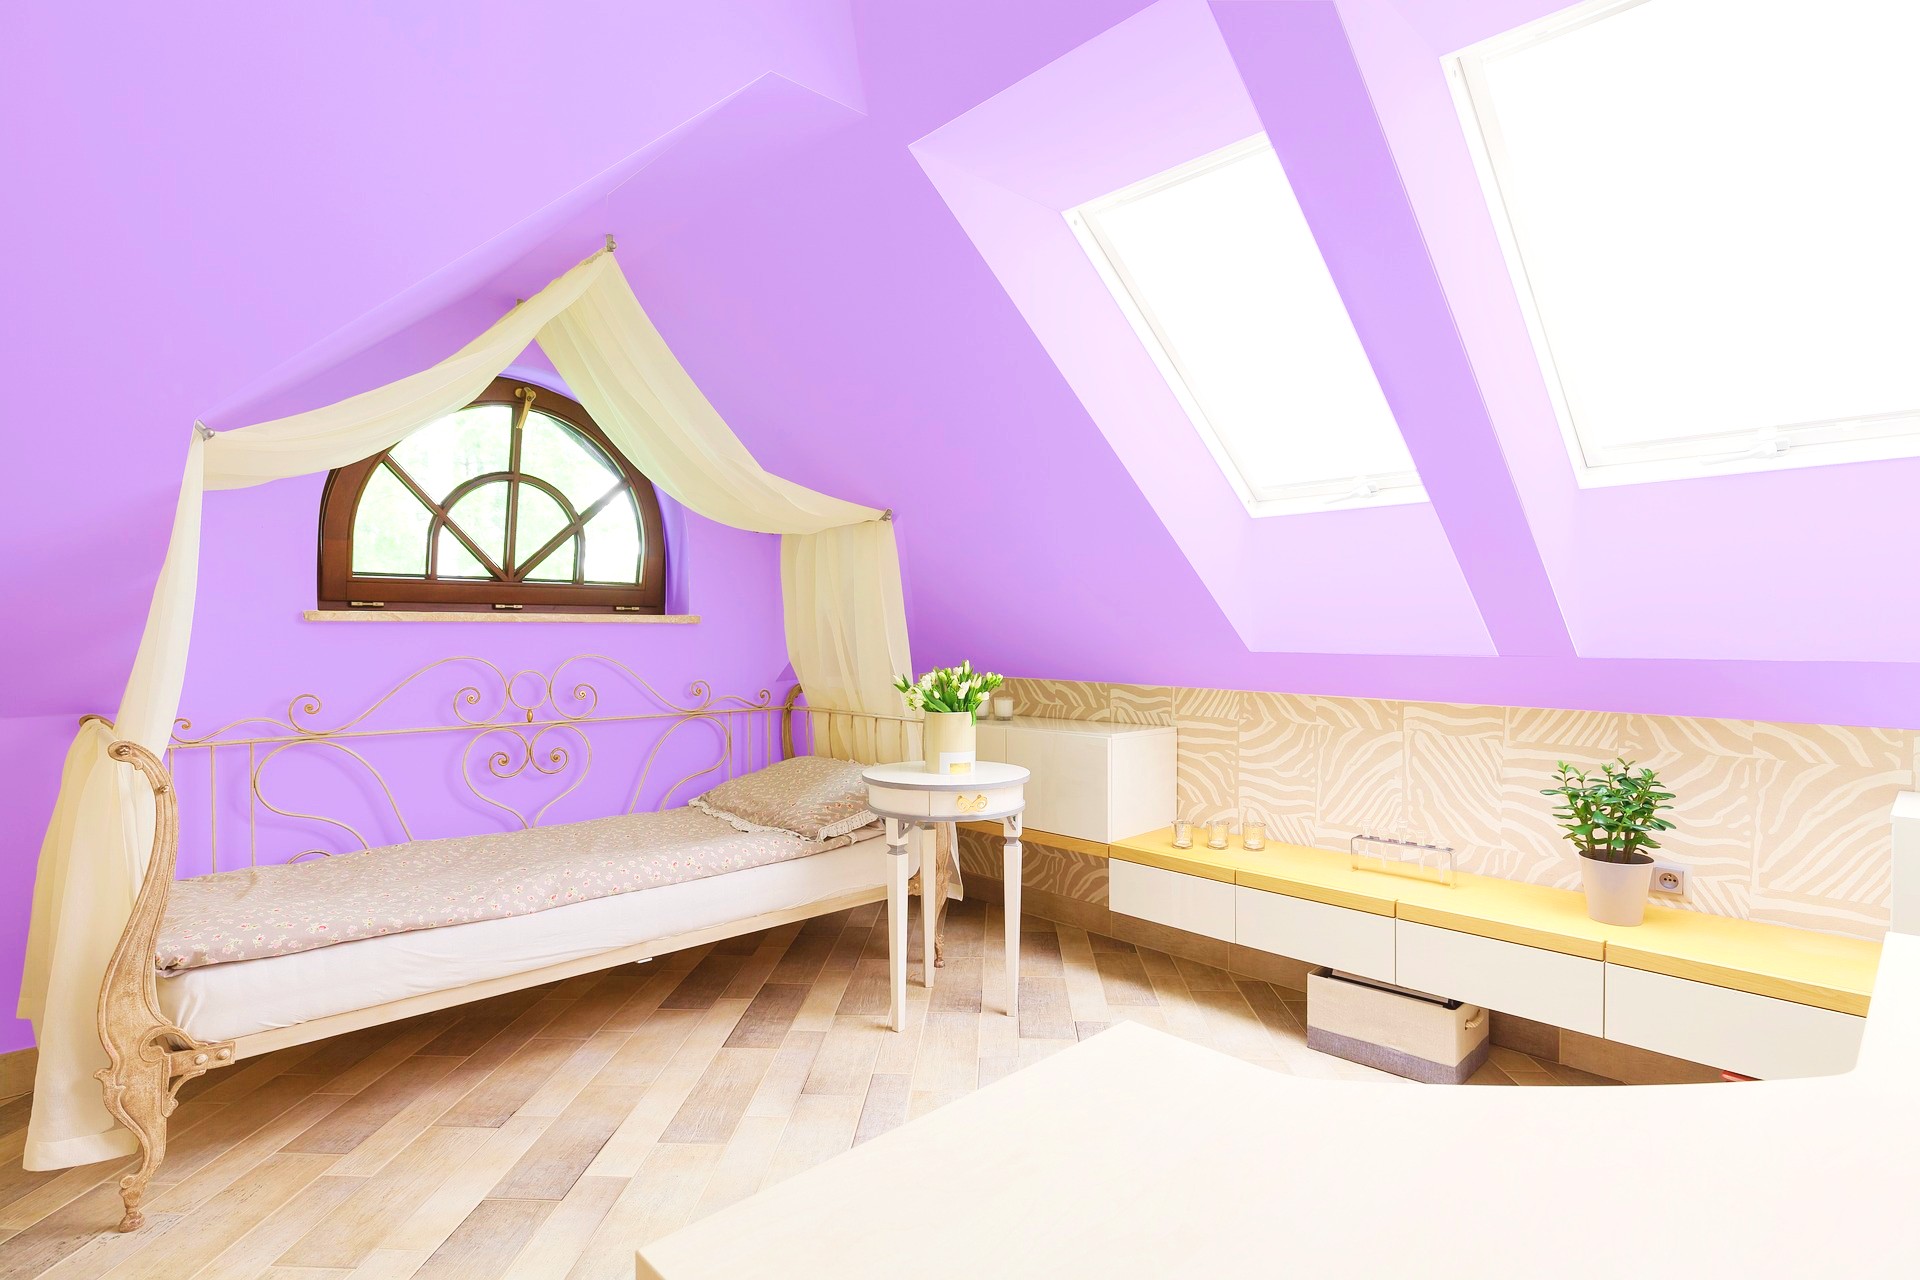 <img src="purple.jpg" alt="purple bedroom in loft"/> 